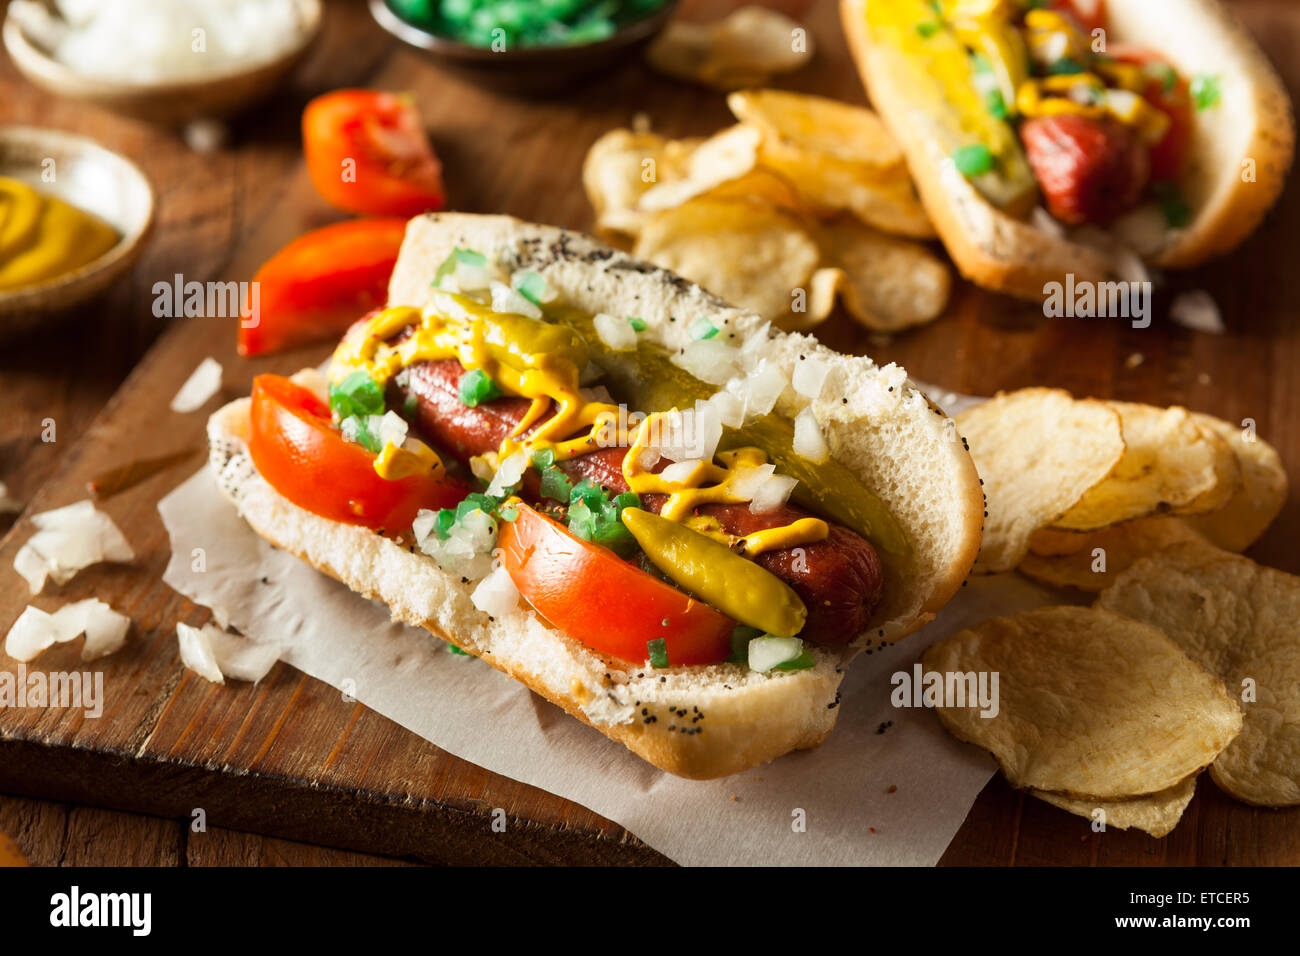 Chicago hot dog estilo casero con mostaza Relish de tomate y cebolla Foto de stock